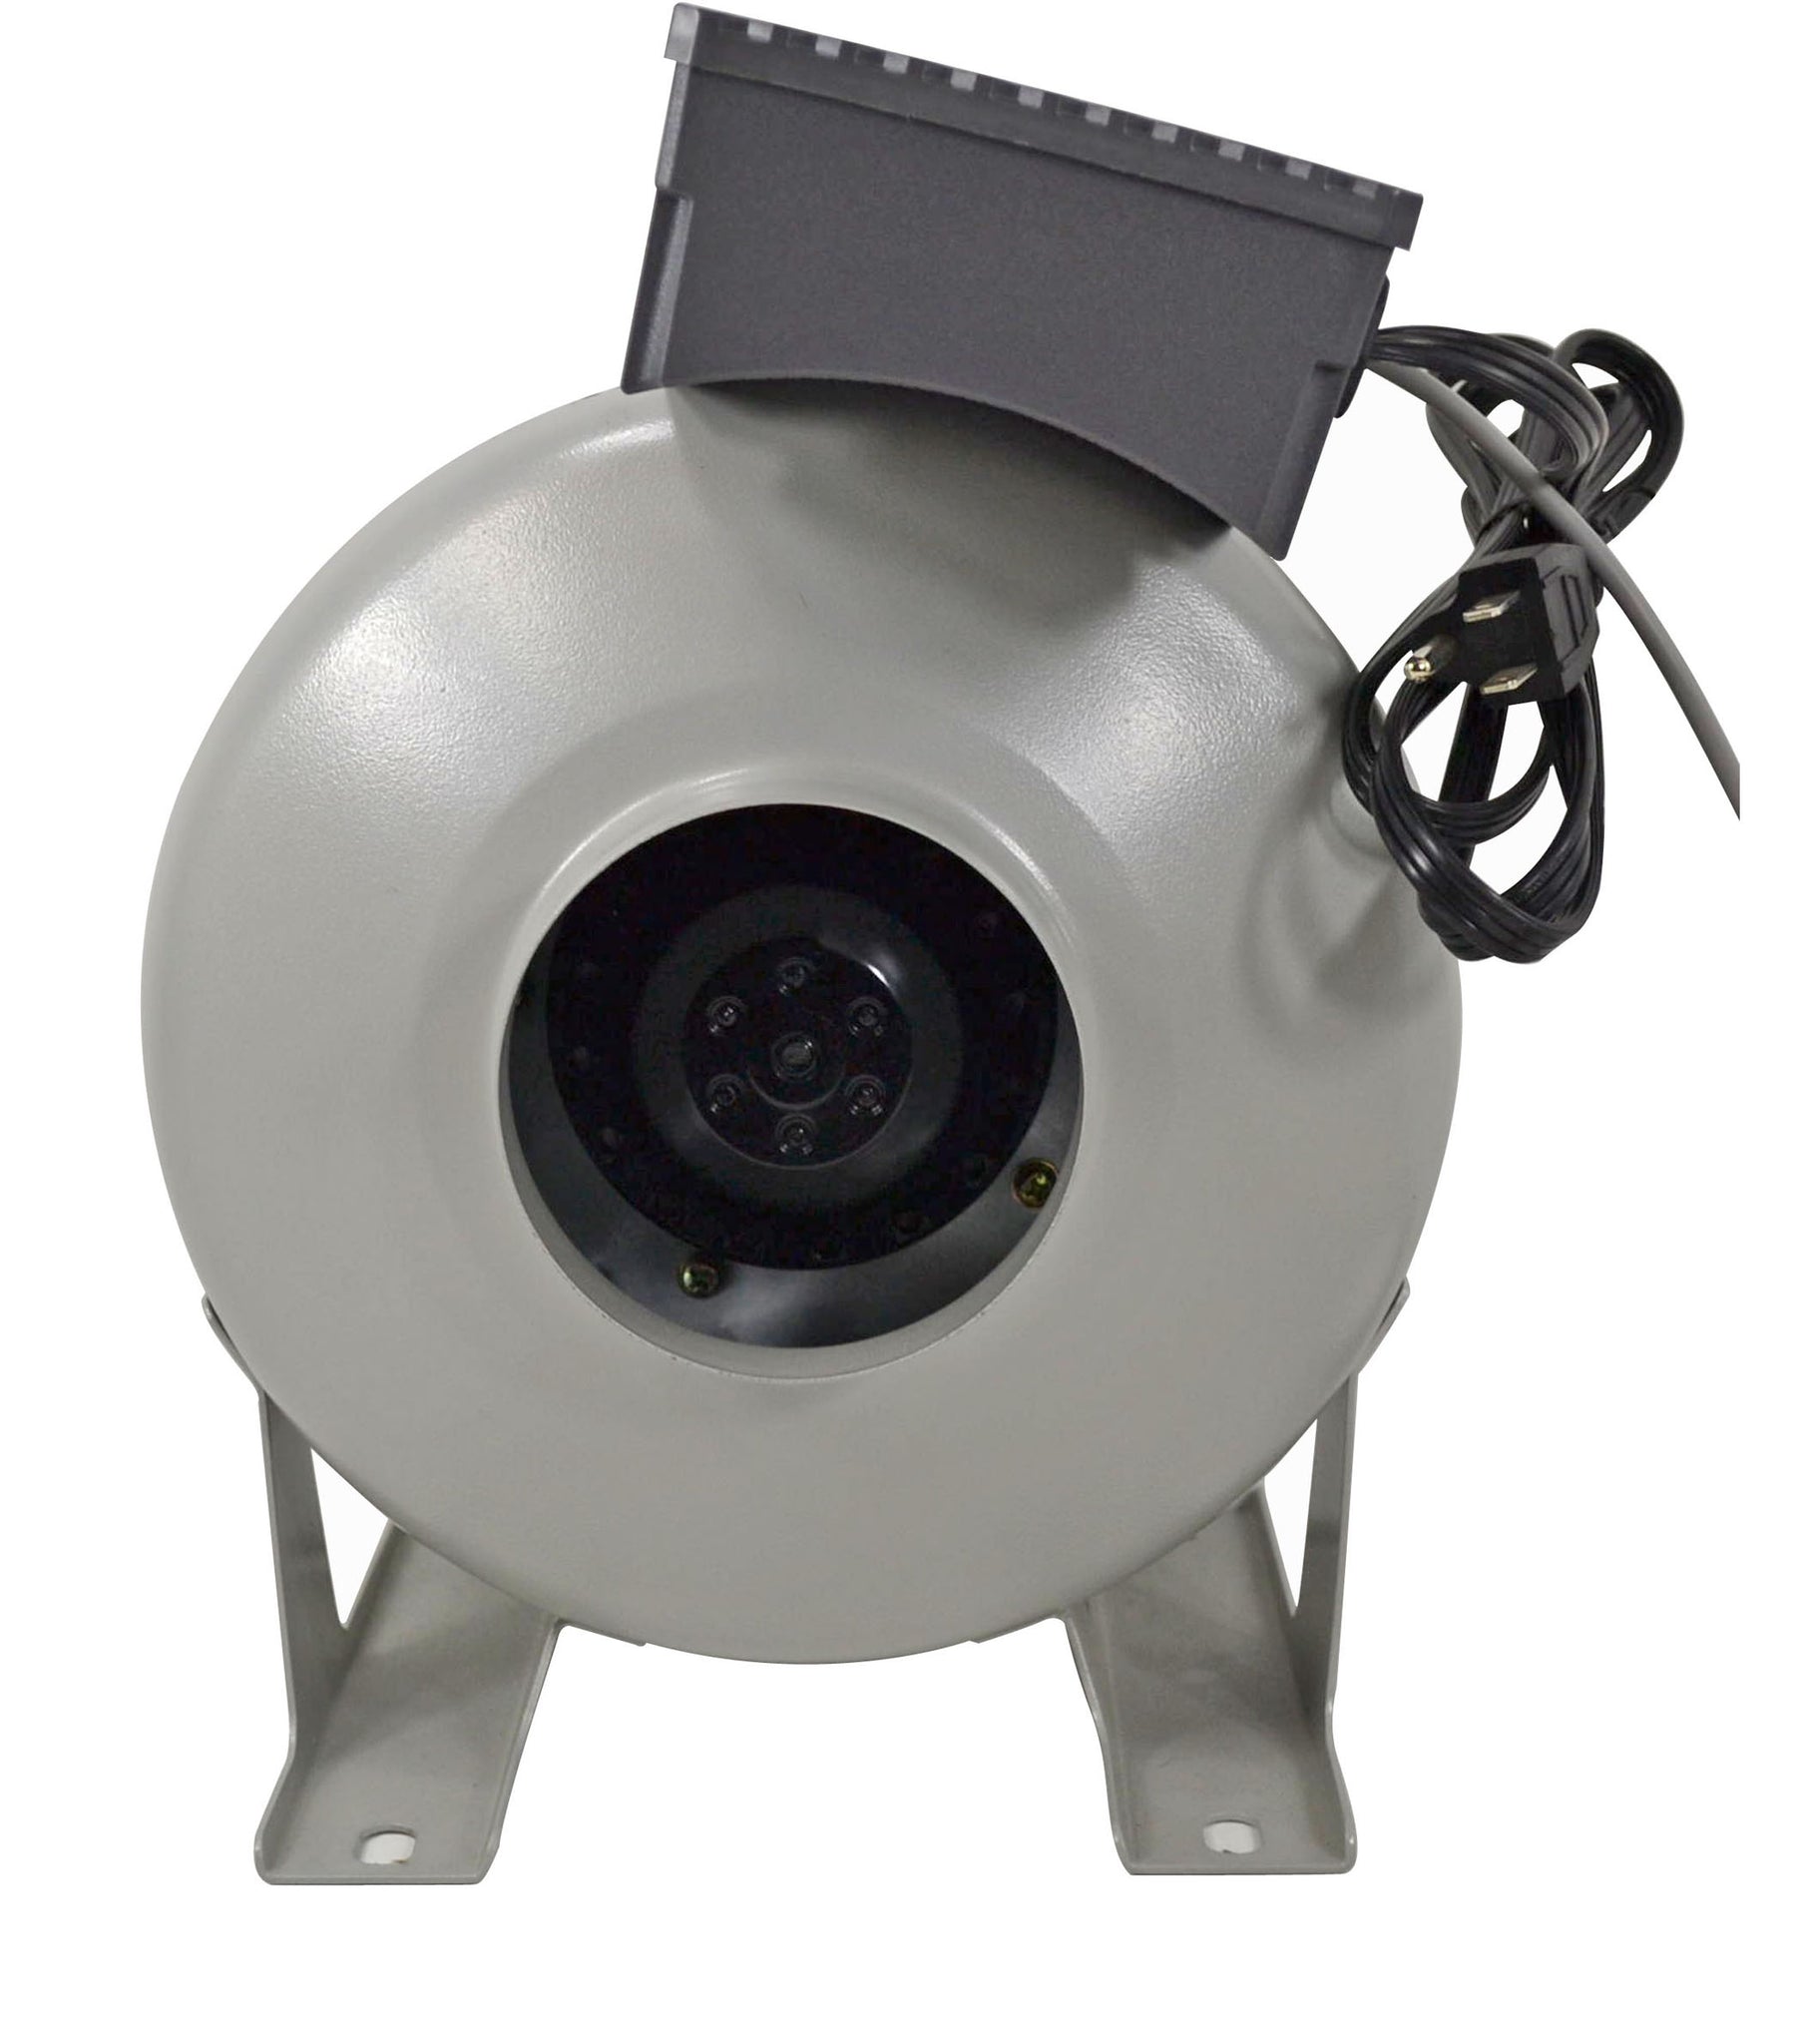 NEW! Tjernlund LB2 Dryer Duct Booster Fan DEDPV Approved!!